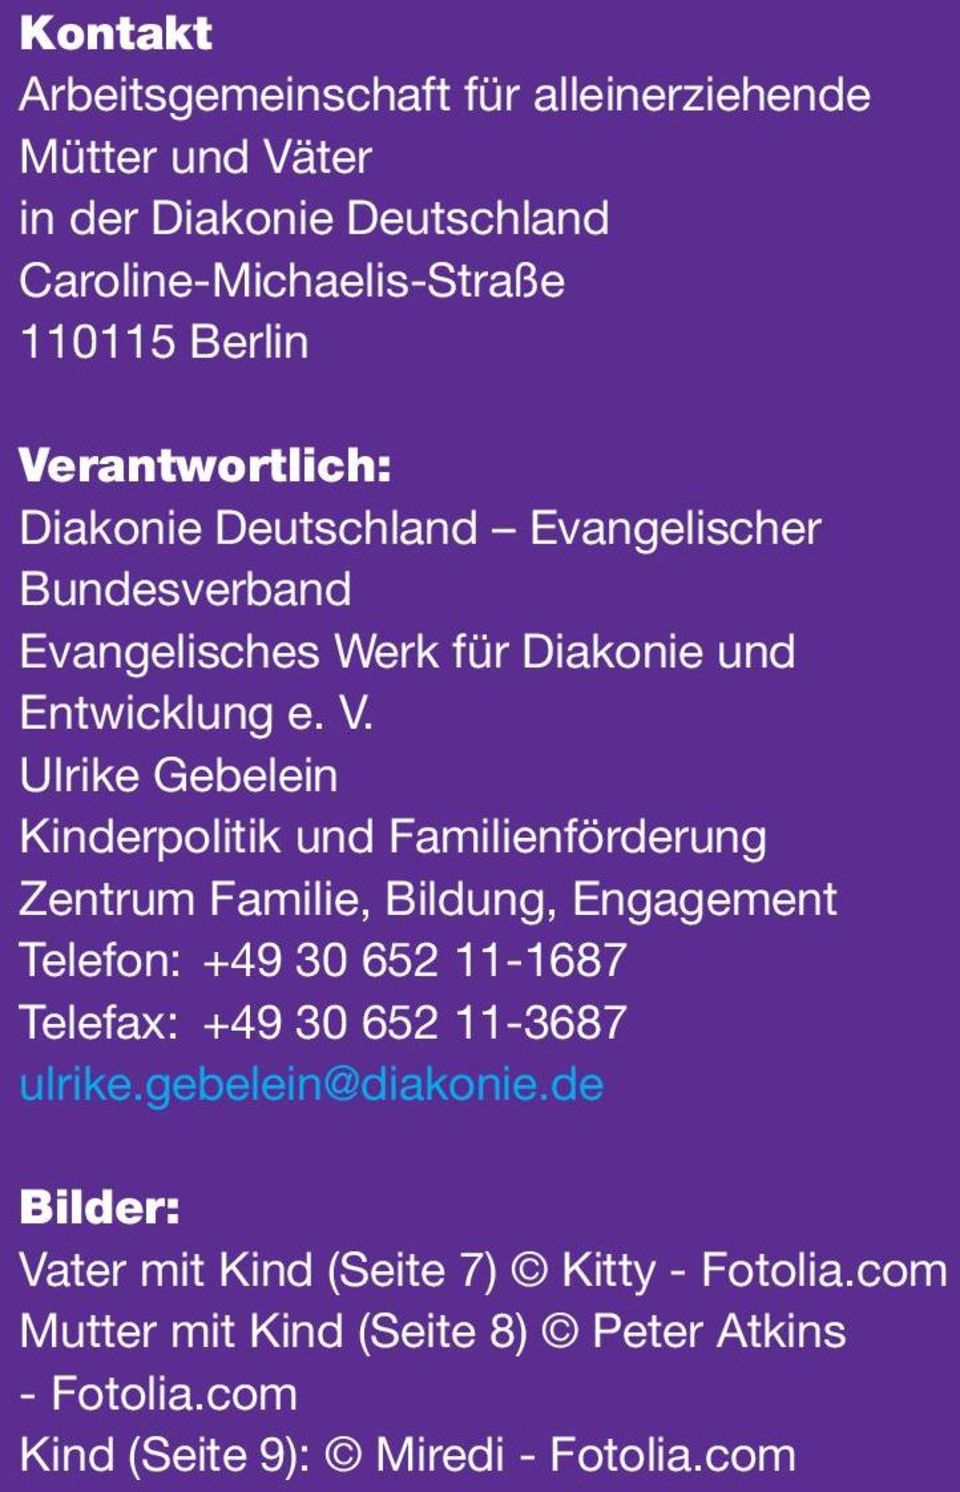 Ulrike Gebelein Kinderpolitik und Familienförderung Zentrum Familie, Bildung, Engagement Telefon: +49 30 652 11-1687 Telefax: +49 30 652